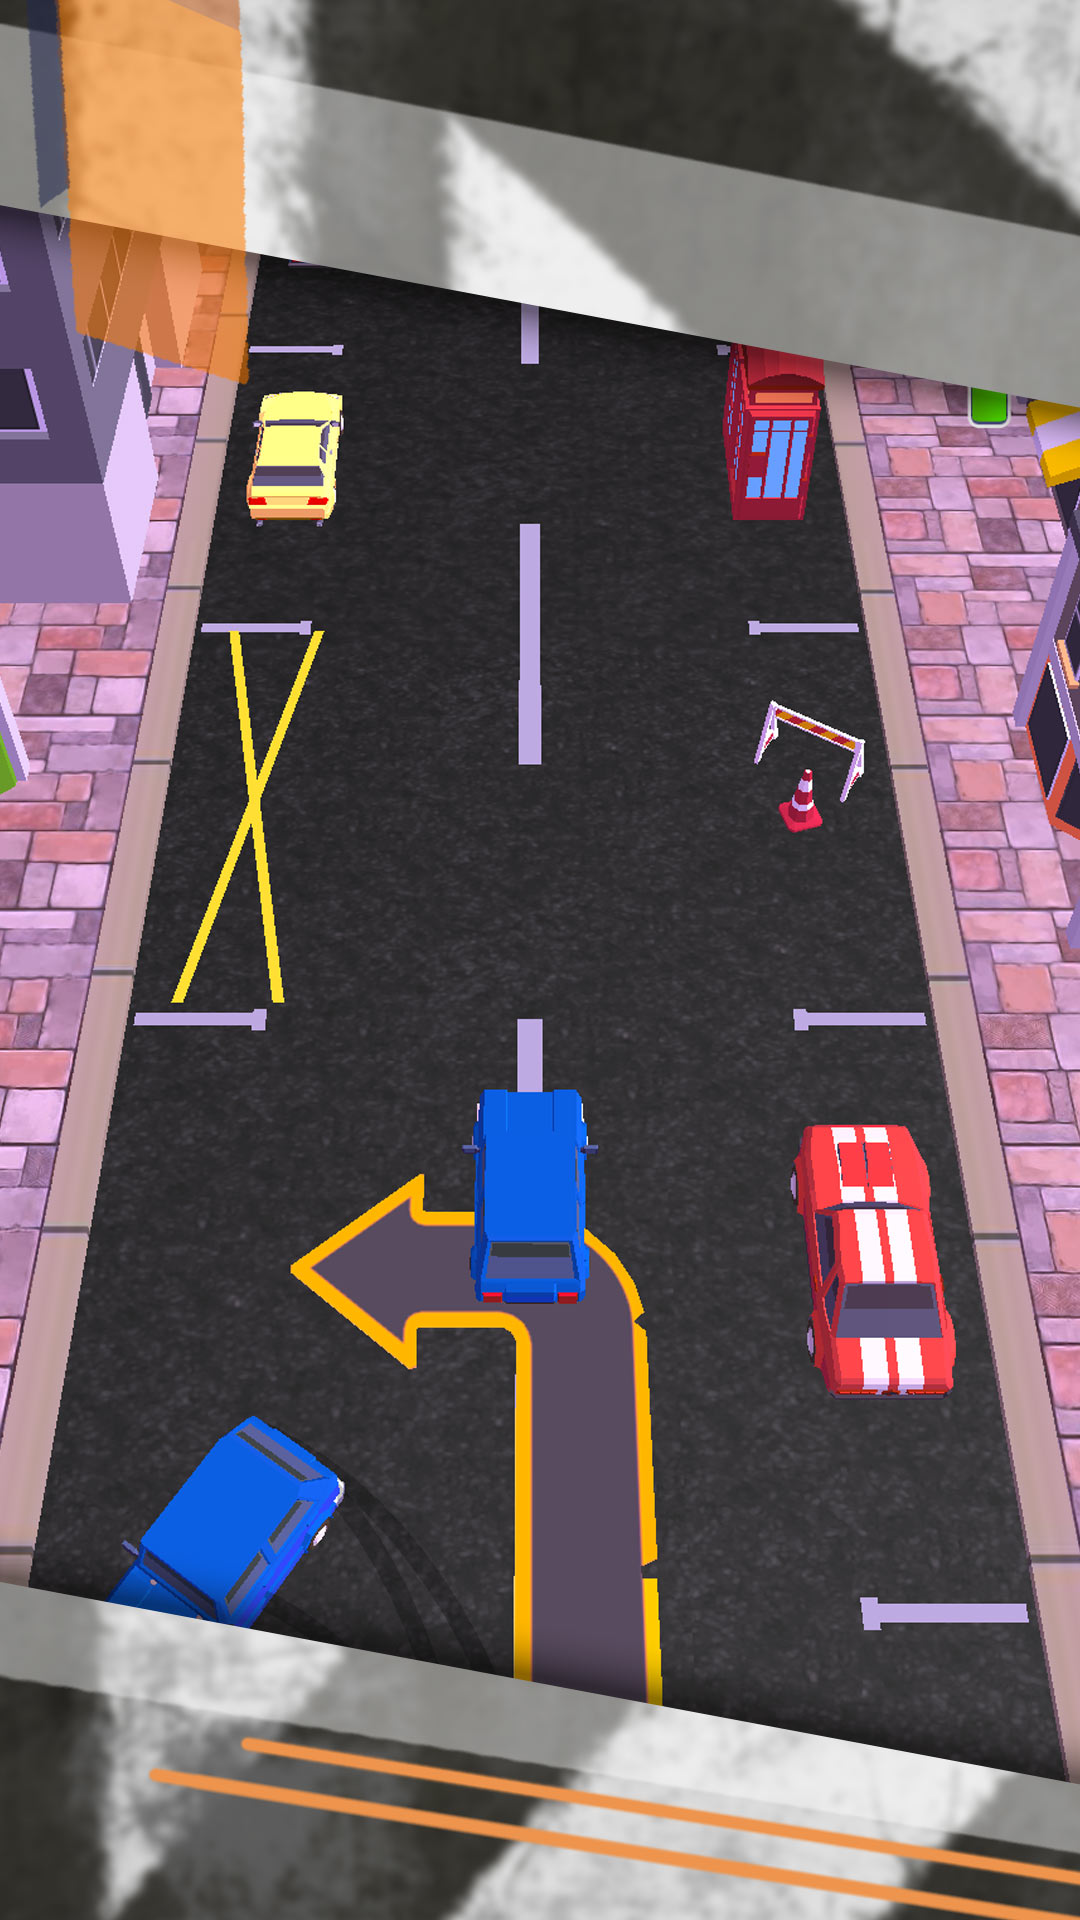 驾校停车模拟器游戏 v1.0.1 安卓版2